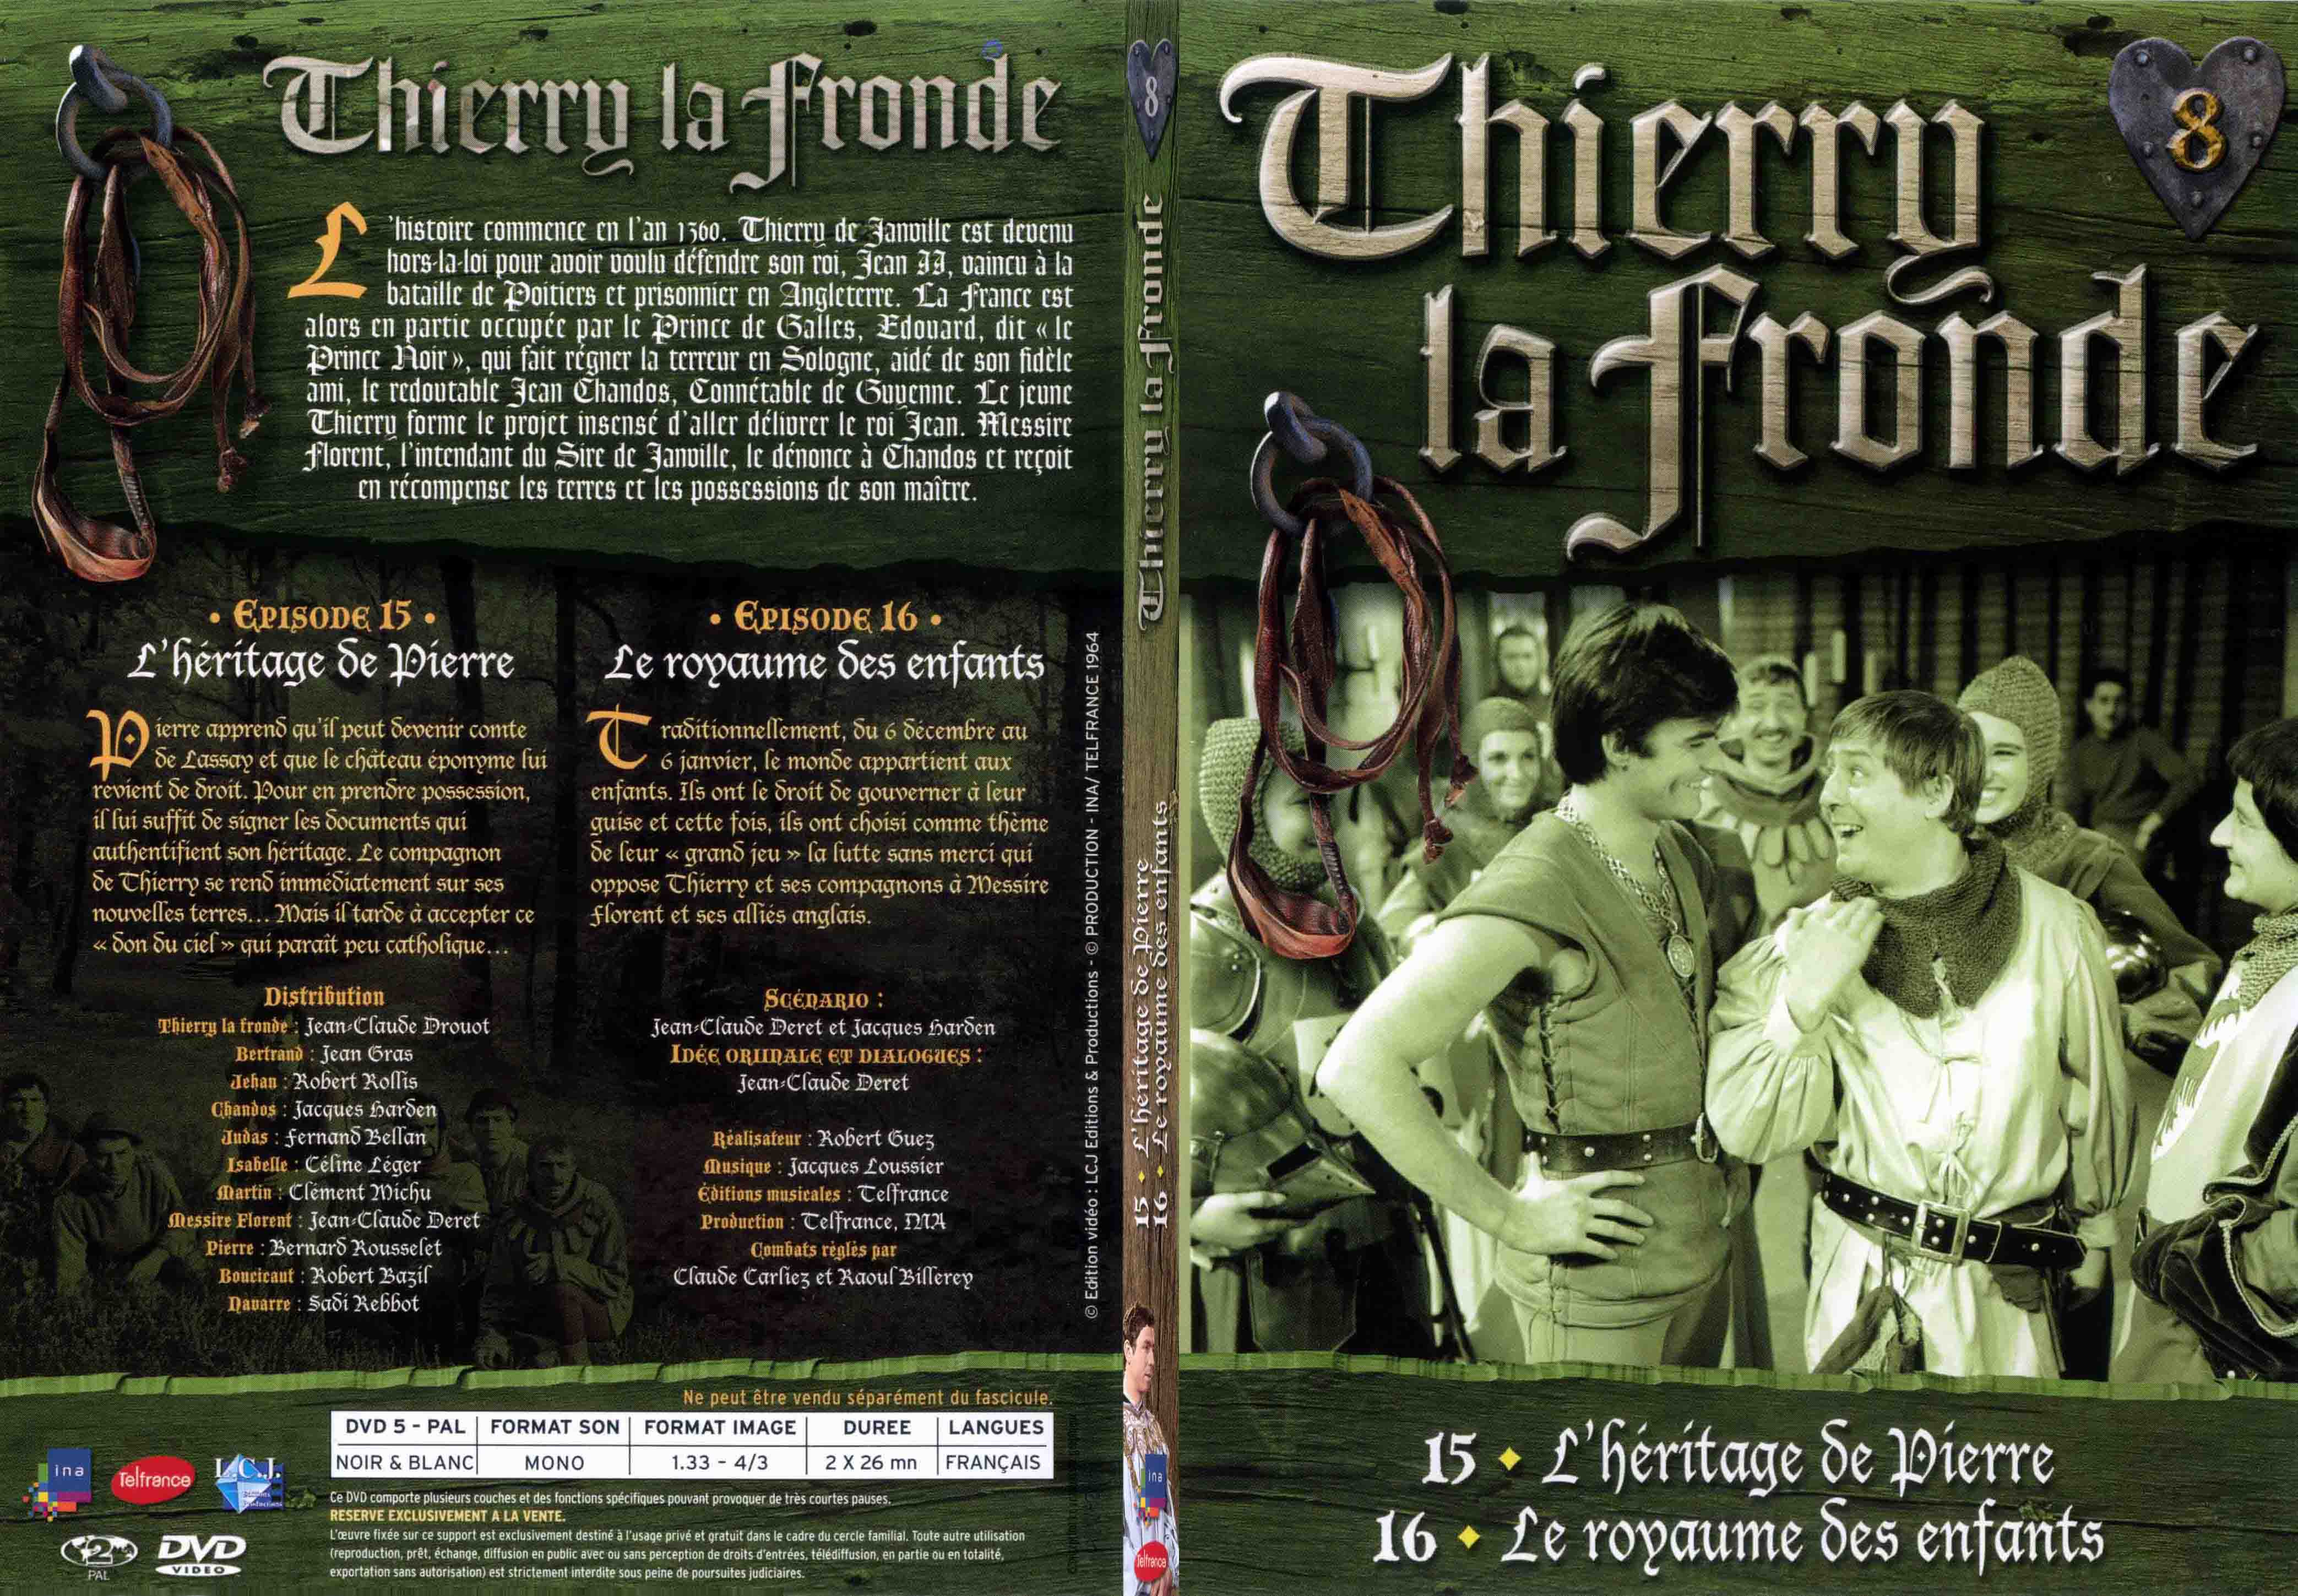 Jaquette DVD Thierry la Fronde vol 08 - SLIM